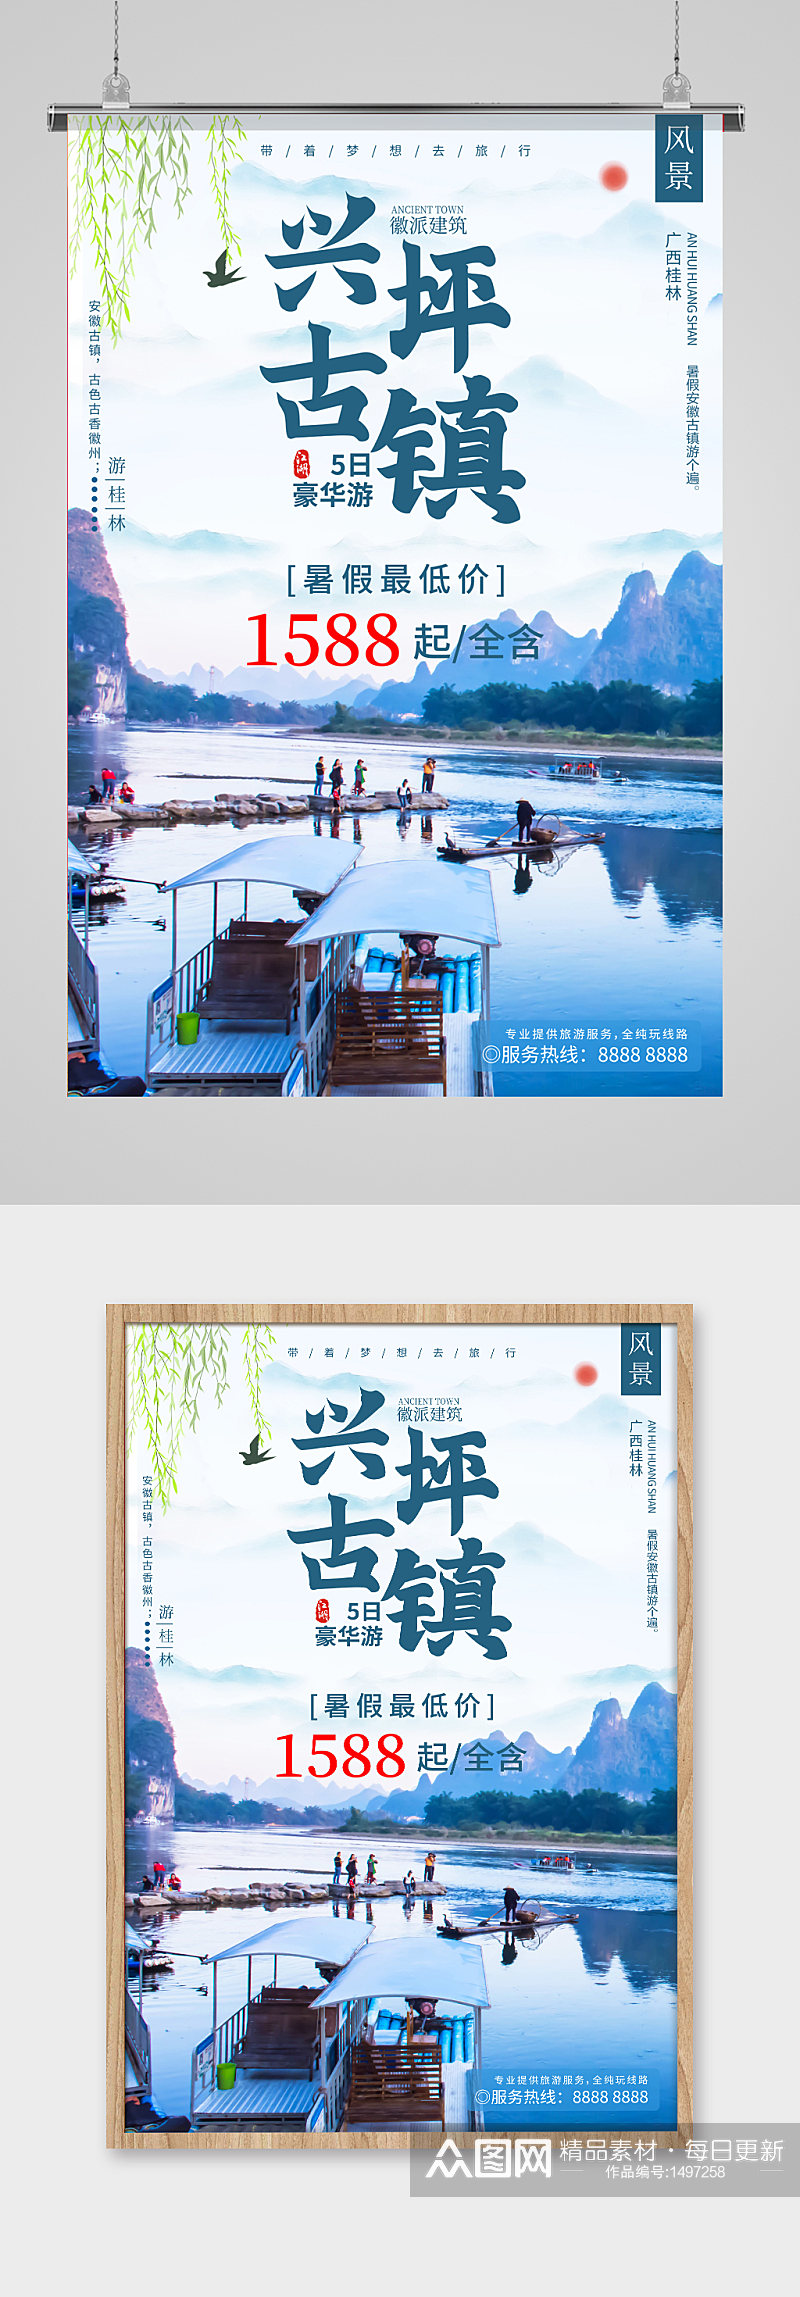 桂林美景旅游海报素材